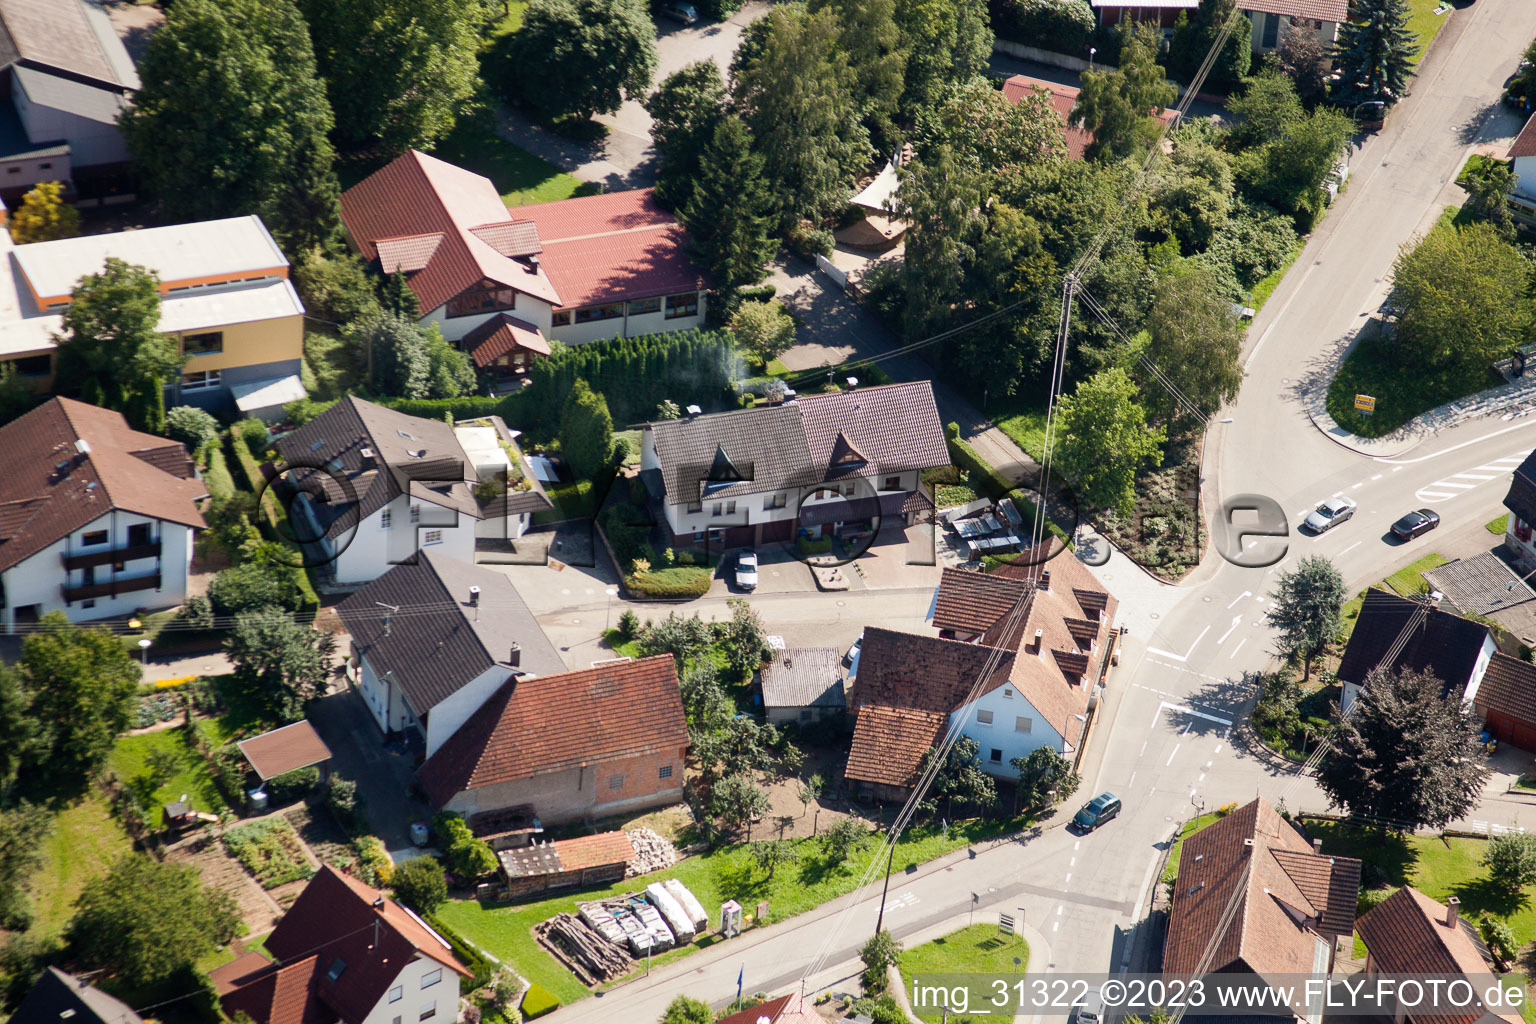 Drohnenbild von Ortsteil Gallenbach in Baden-Baden im Bundesland Baden-Württemberg, Deutschland